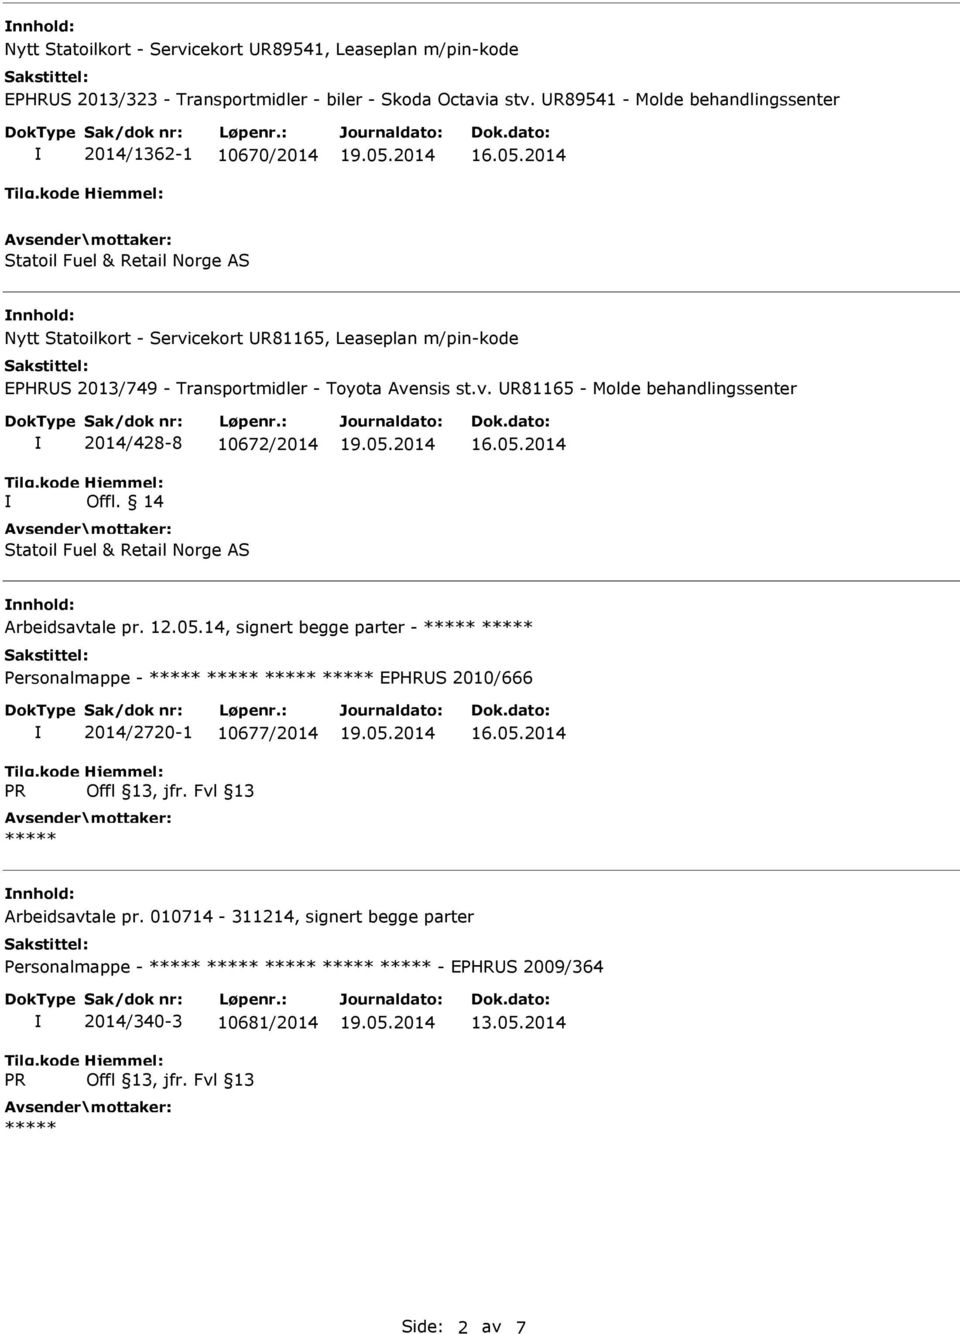 Transportmidler - Toyota Avensis st.v. R81165 - Molde behandlingssenter 2014/428-8 10672/2014 Offl. 14 Statoil Fuel & Retail Norge AS nnhold: Arbeidsavtale pr. 12.05.